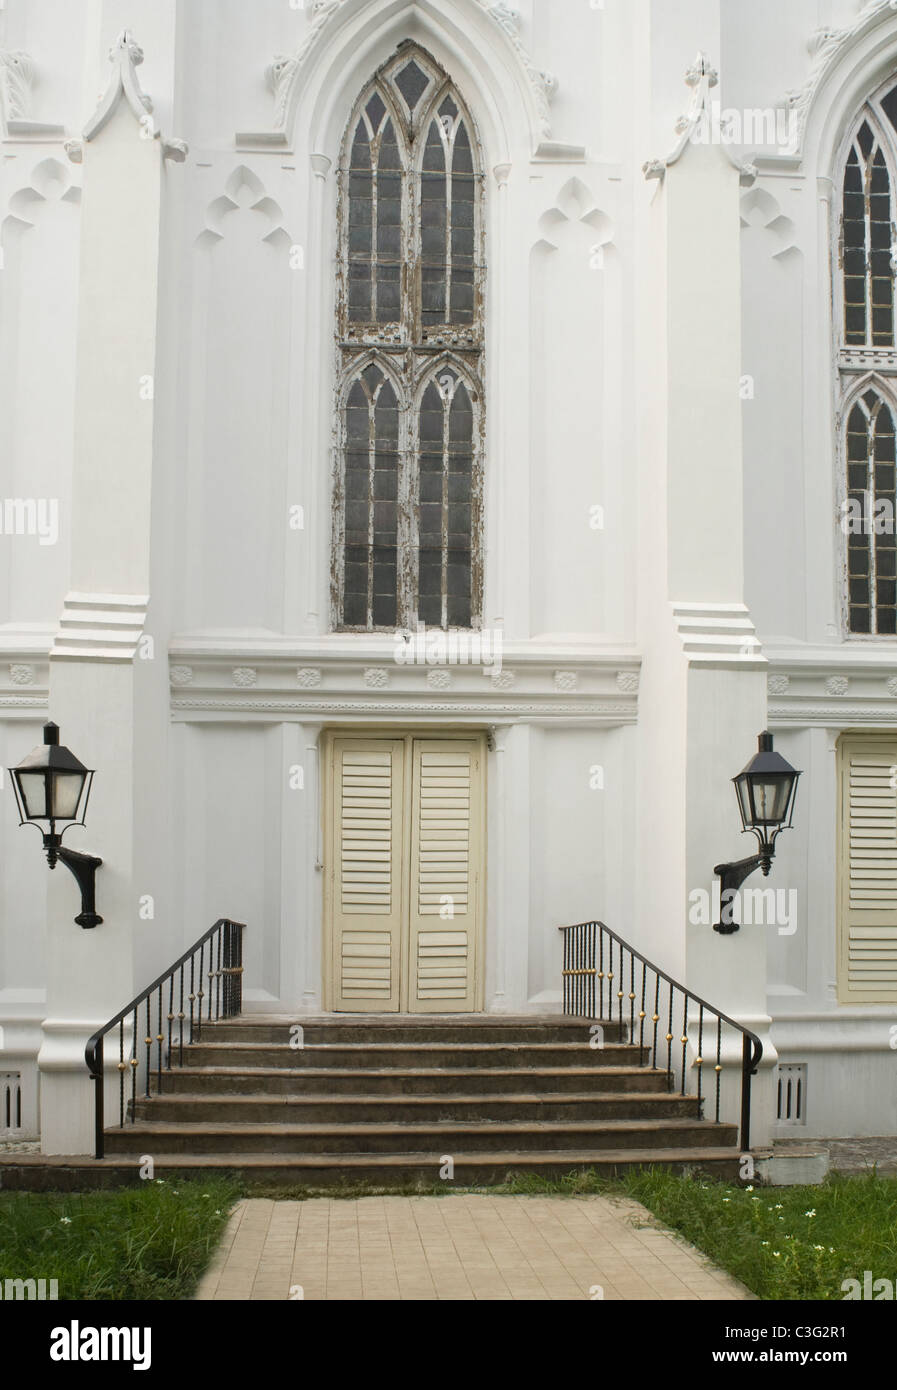 Porte d'entrée d'une cathédrale, la Cathédrale St Paul, Kolkata, West Bengal, India Banque D'Images